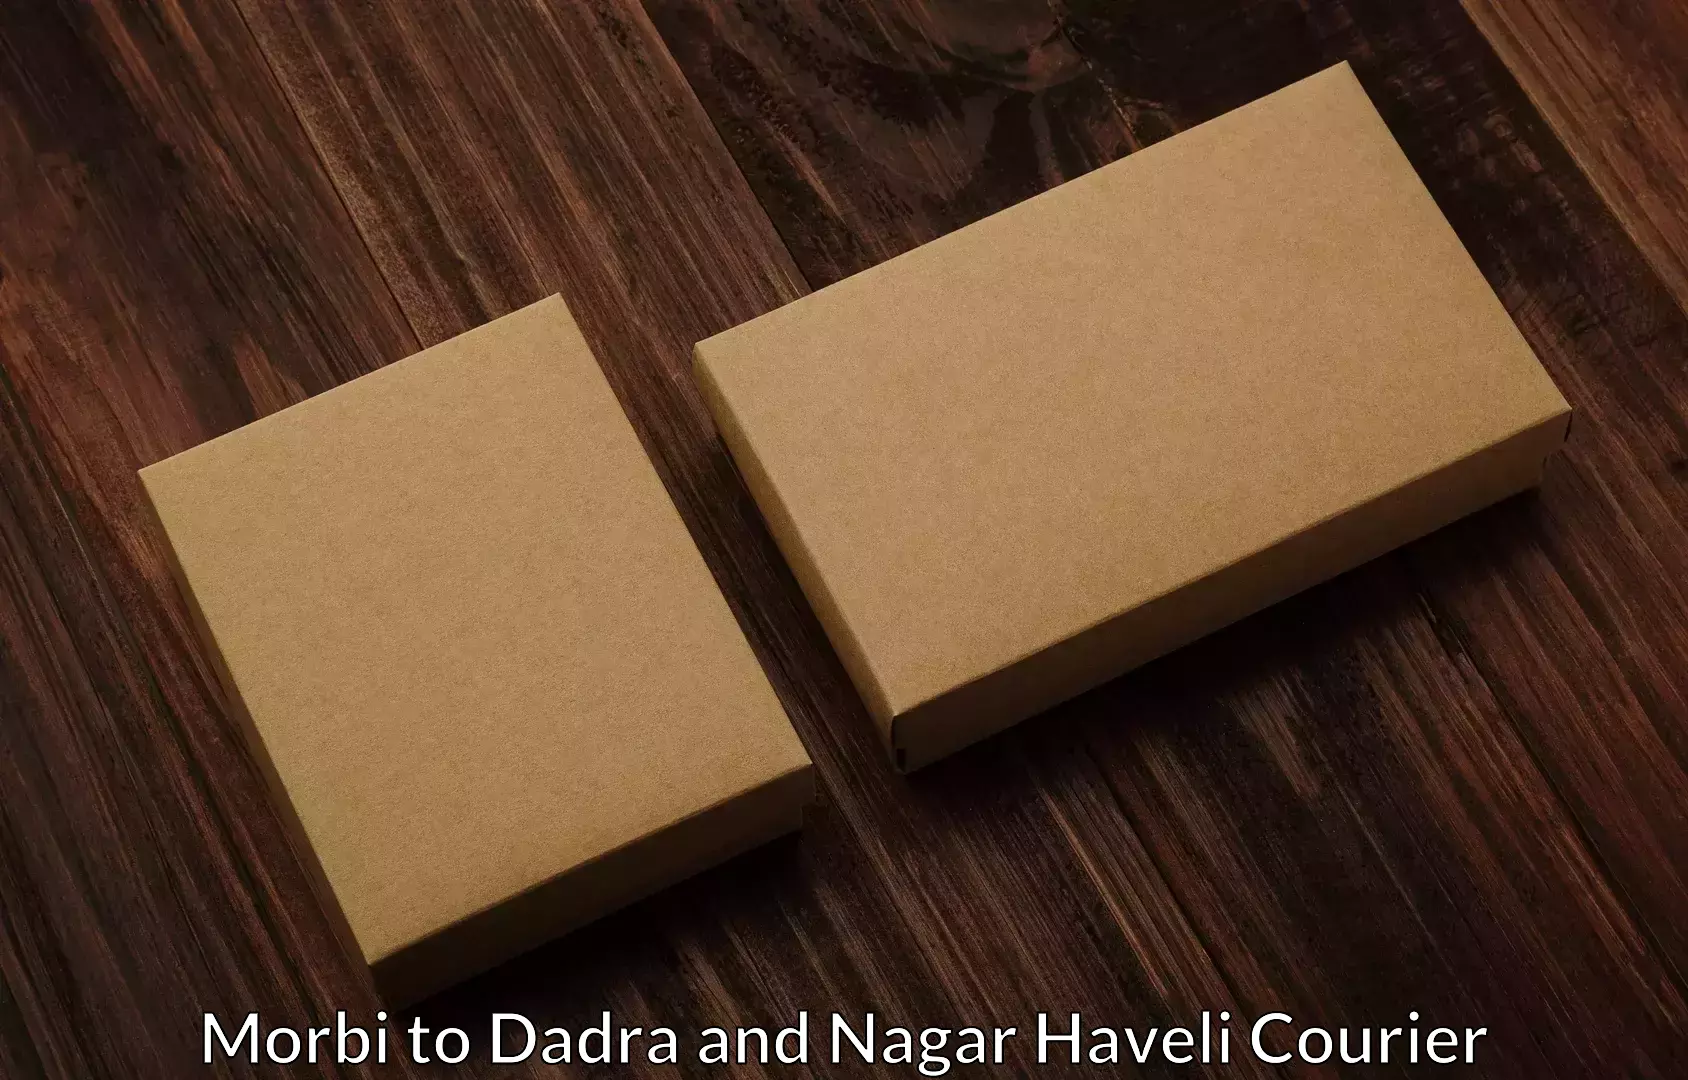 Reliable movers Morbi to Dadra and Nagar Haveli